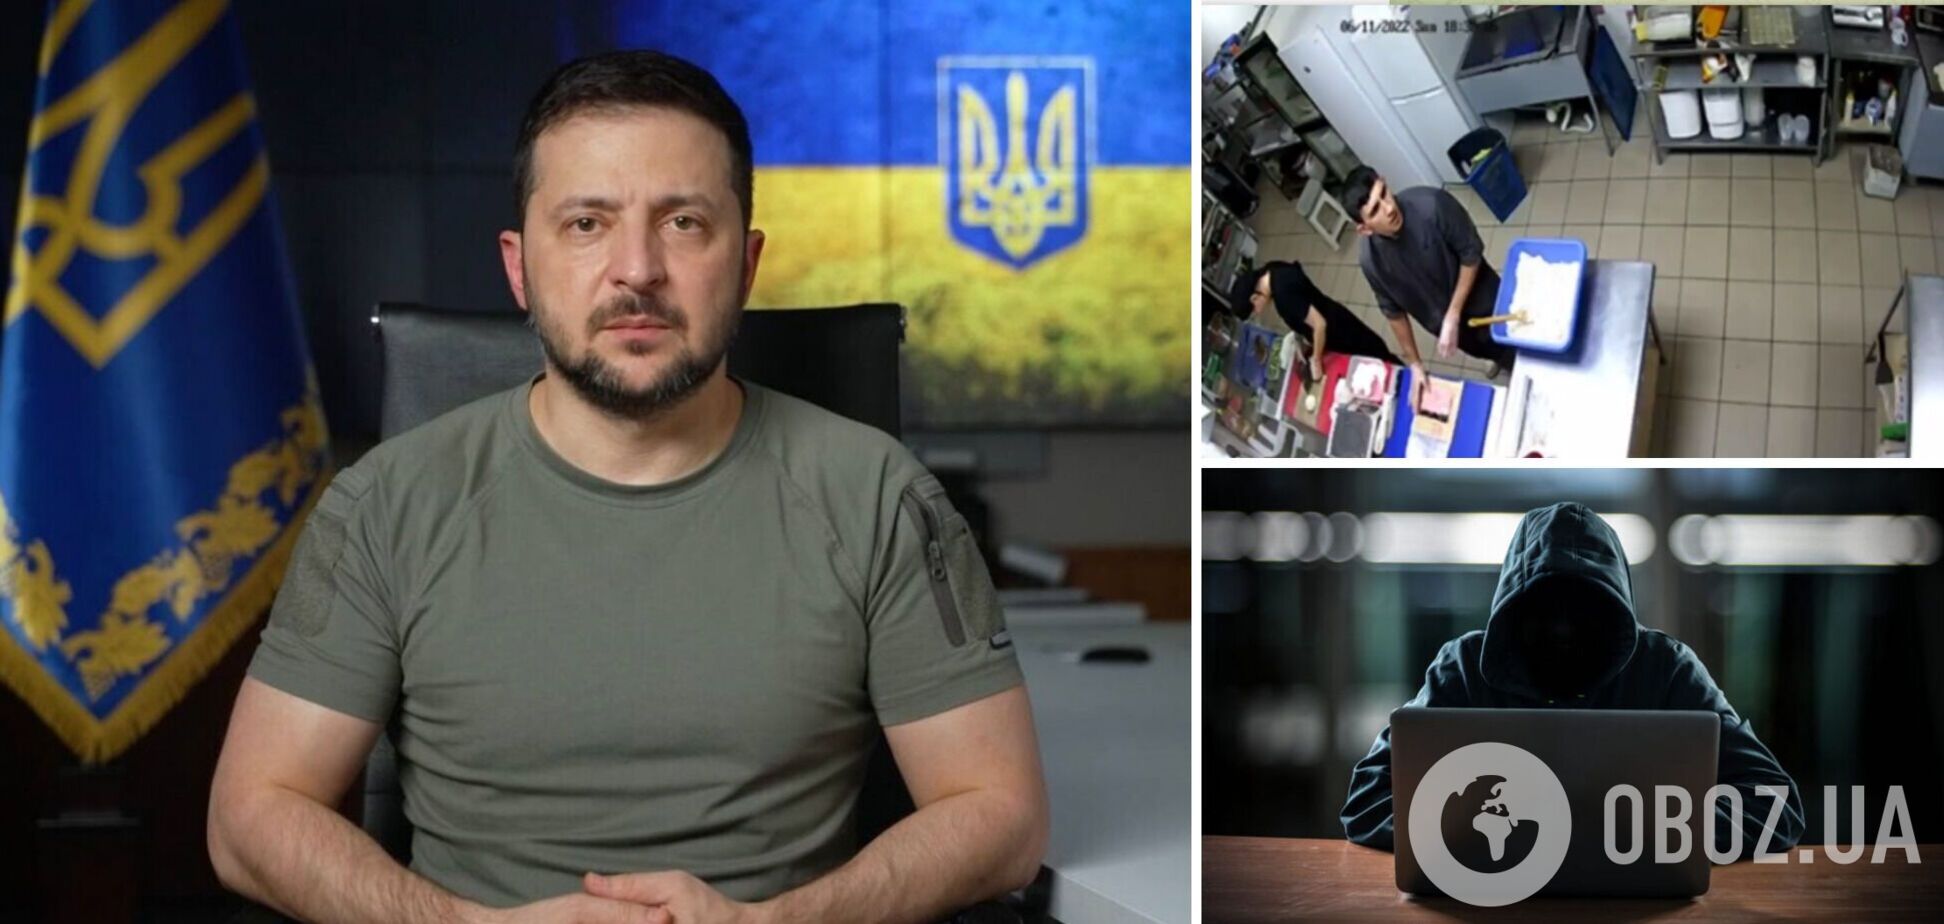 Українські хакери запустили звернення Зеленського через камери спостереження в РФ: реакція росіян потрапила на відео